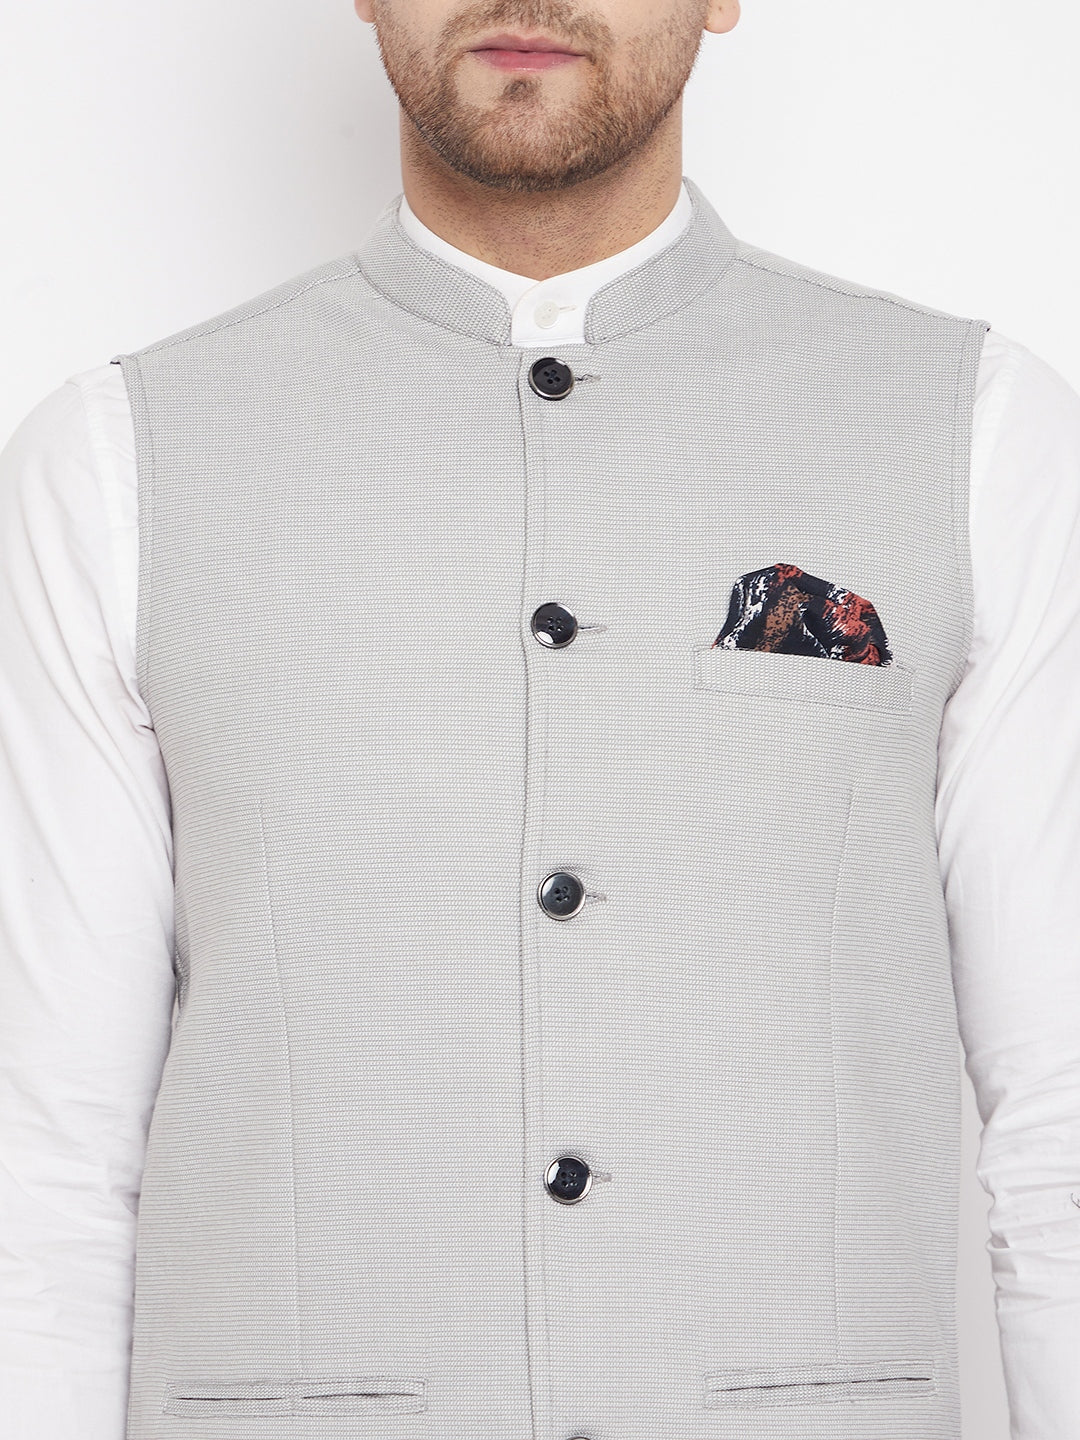 Men's Grey Color Nehru Jacket-Contrast Lining-Free Pocket Square - Even Apparels